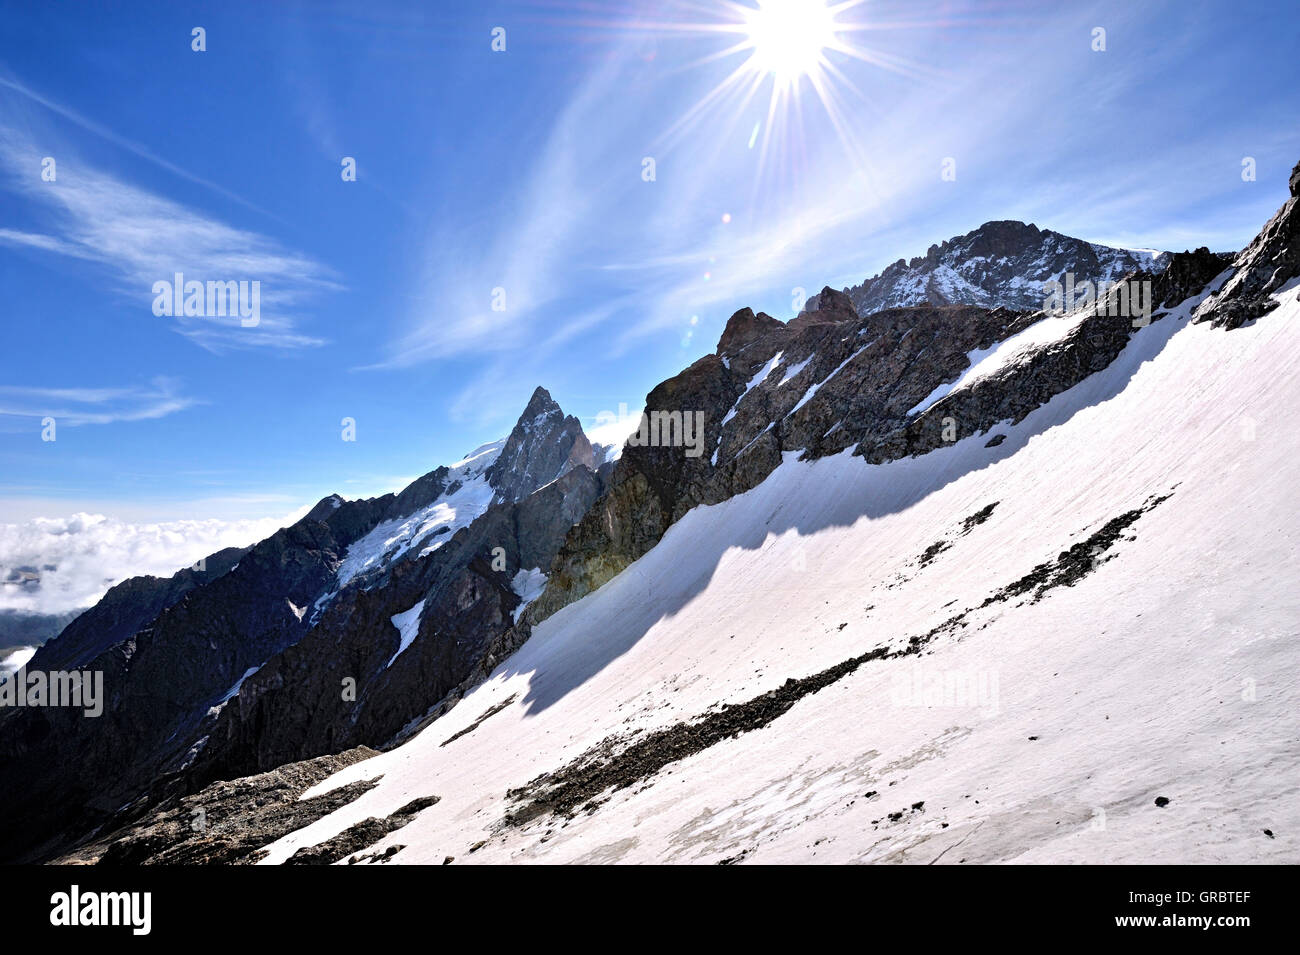 La luce diretta del sole oltre il paesaggio di neve con la cima della montagna di La Meije, La Grave, sulle Alpi francesi, Francia Foto Stock